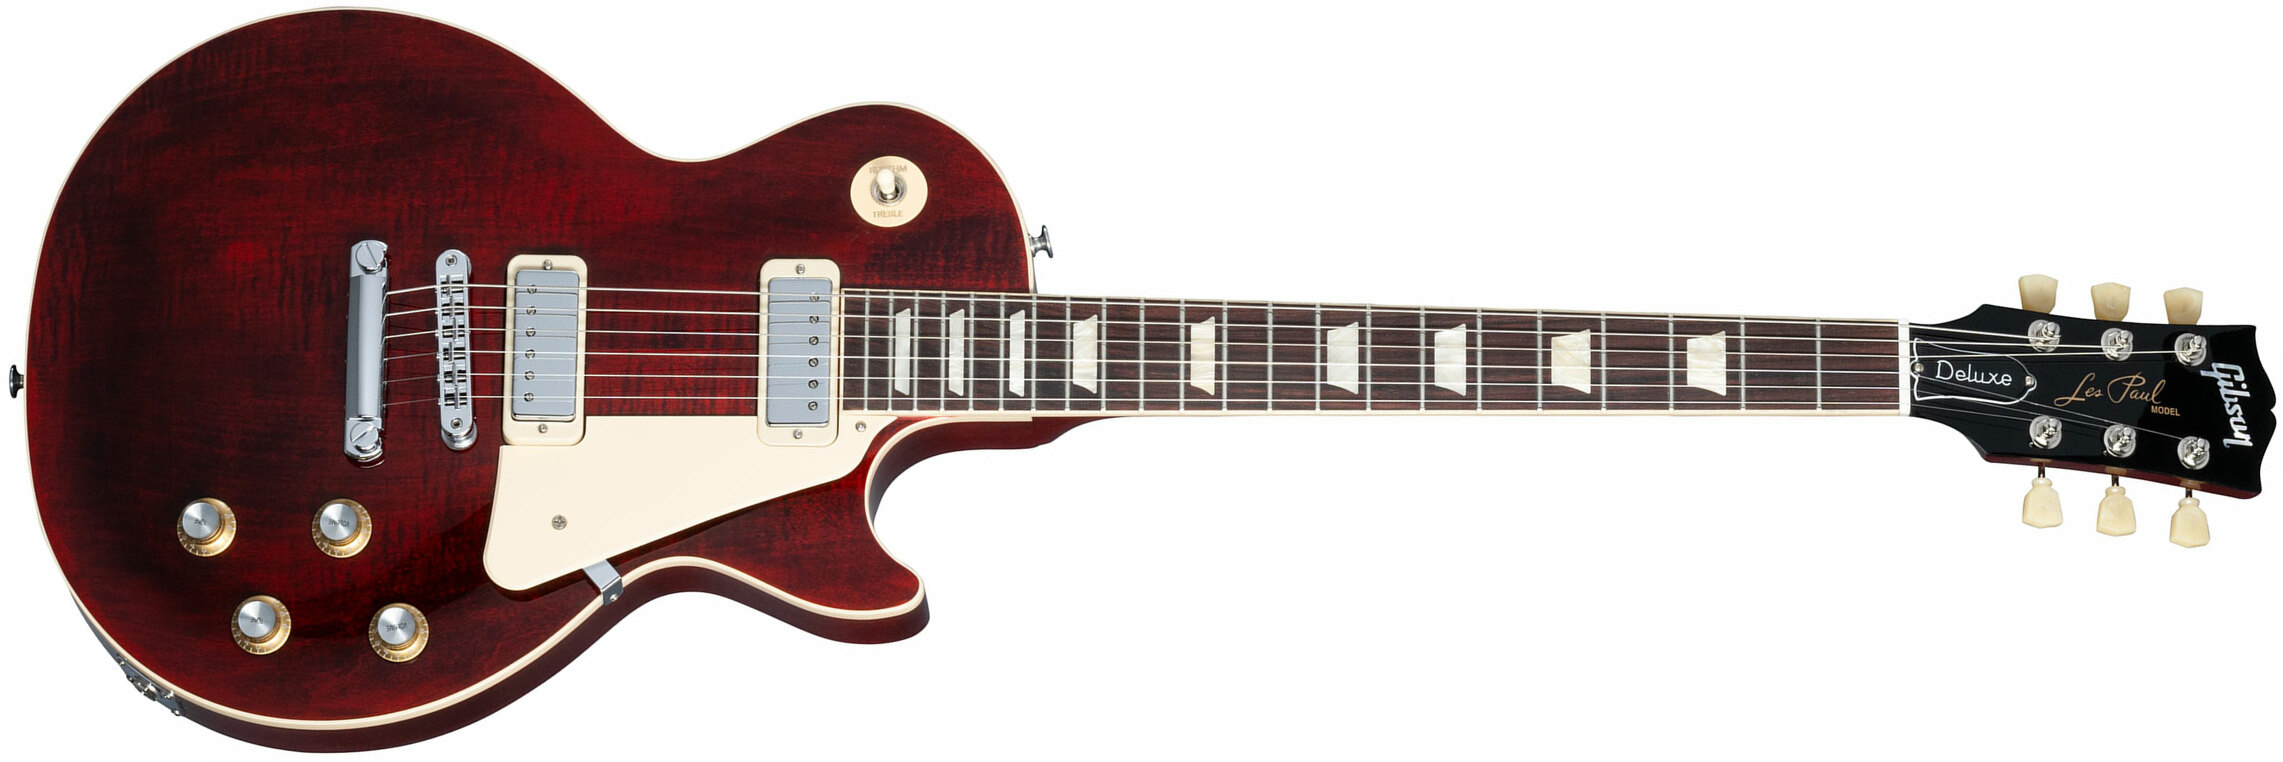 Gibson Les Paul Deluxe 70s Plain Top Original 2mh Ht Rw - Wine Red - Guitarra eléctrica de corte único. - Main picture